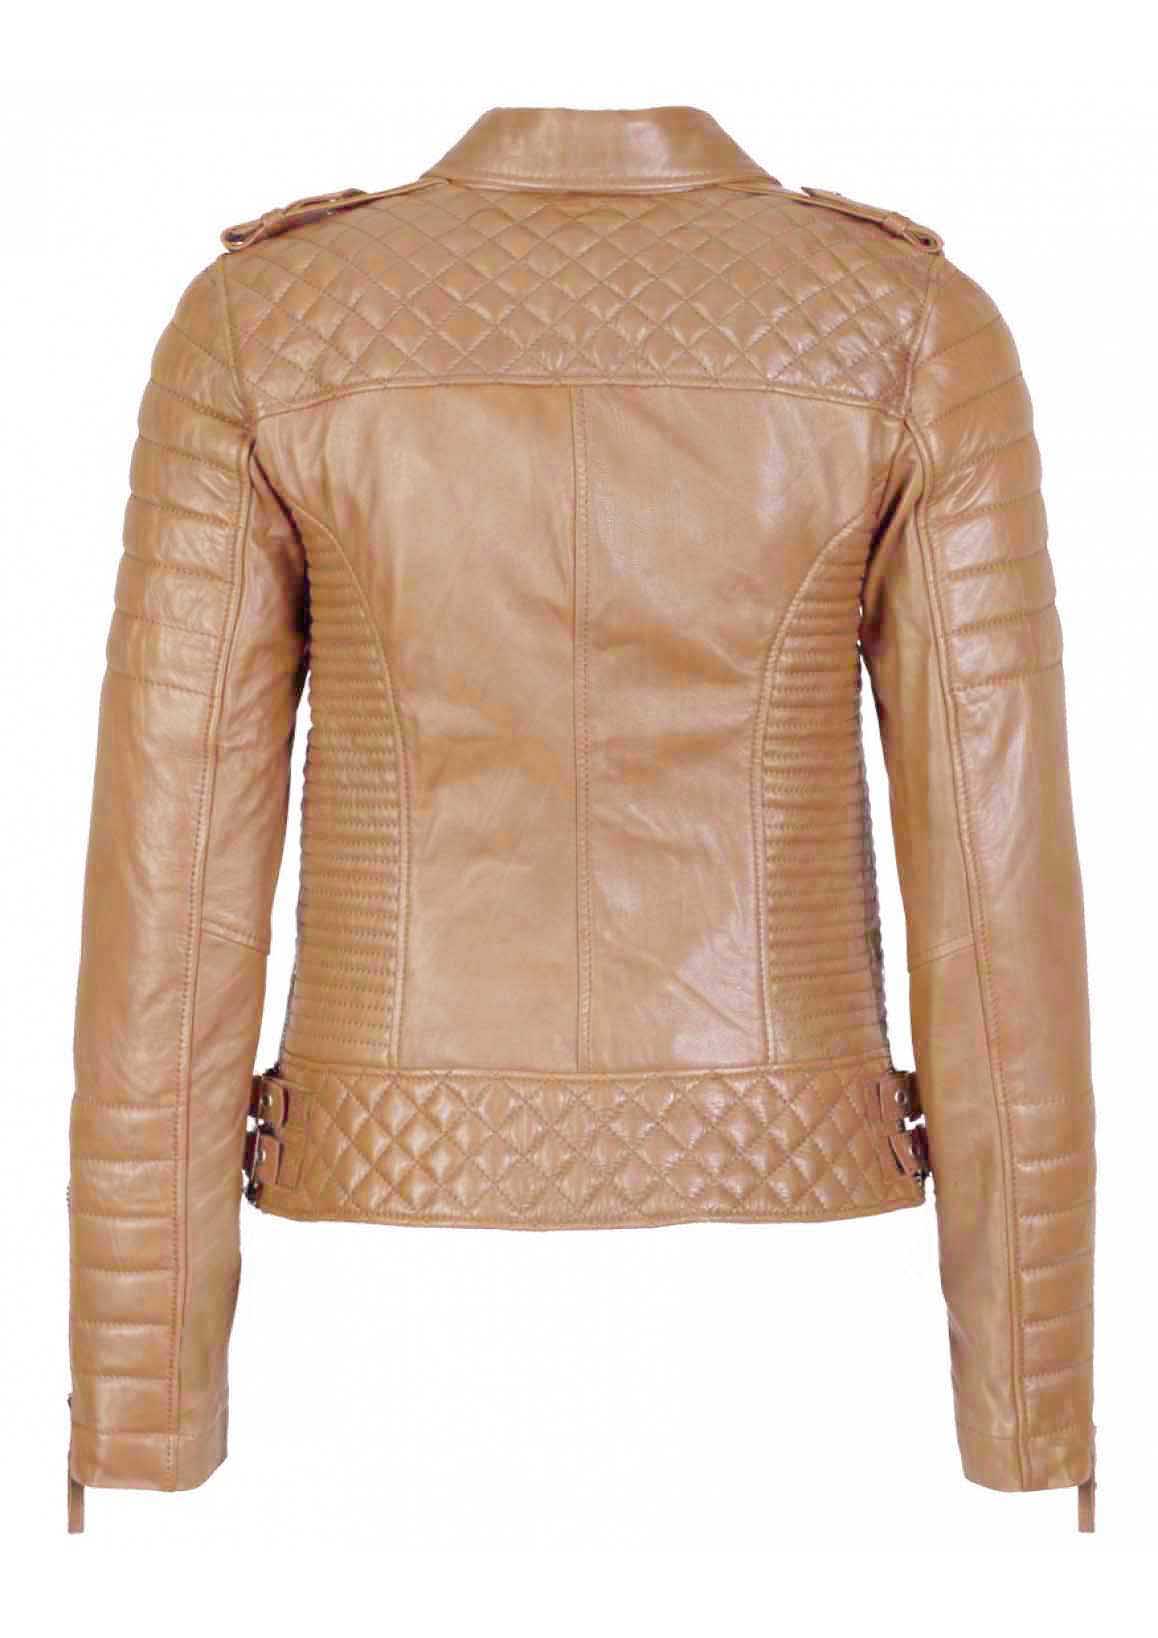 Women's Biker Leather Jacket Camel Beige freeshipping - SkinOutfit